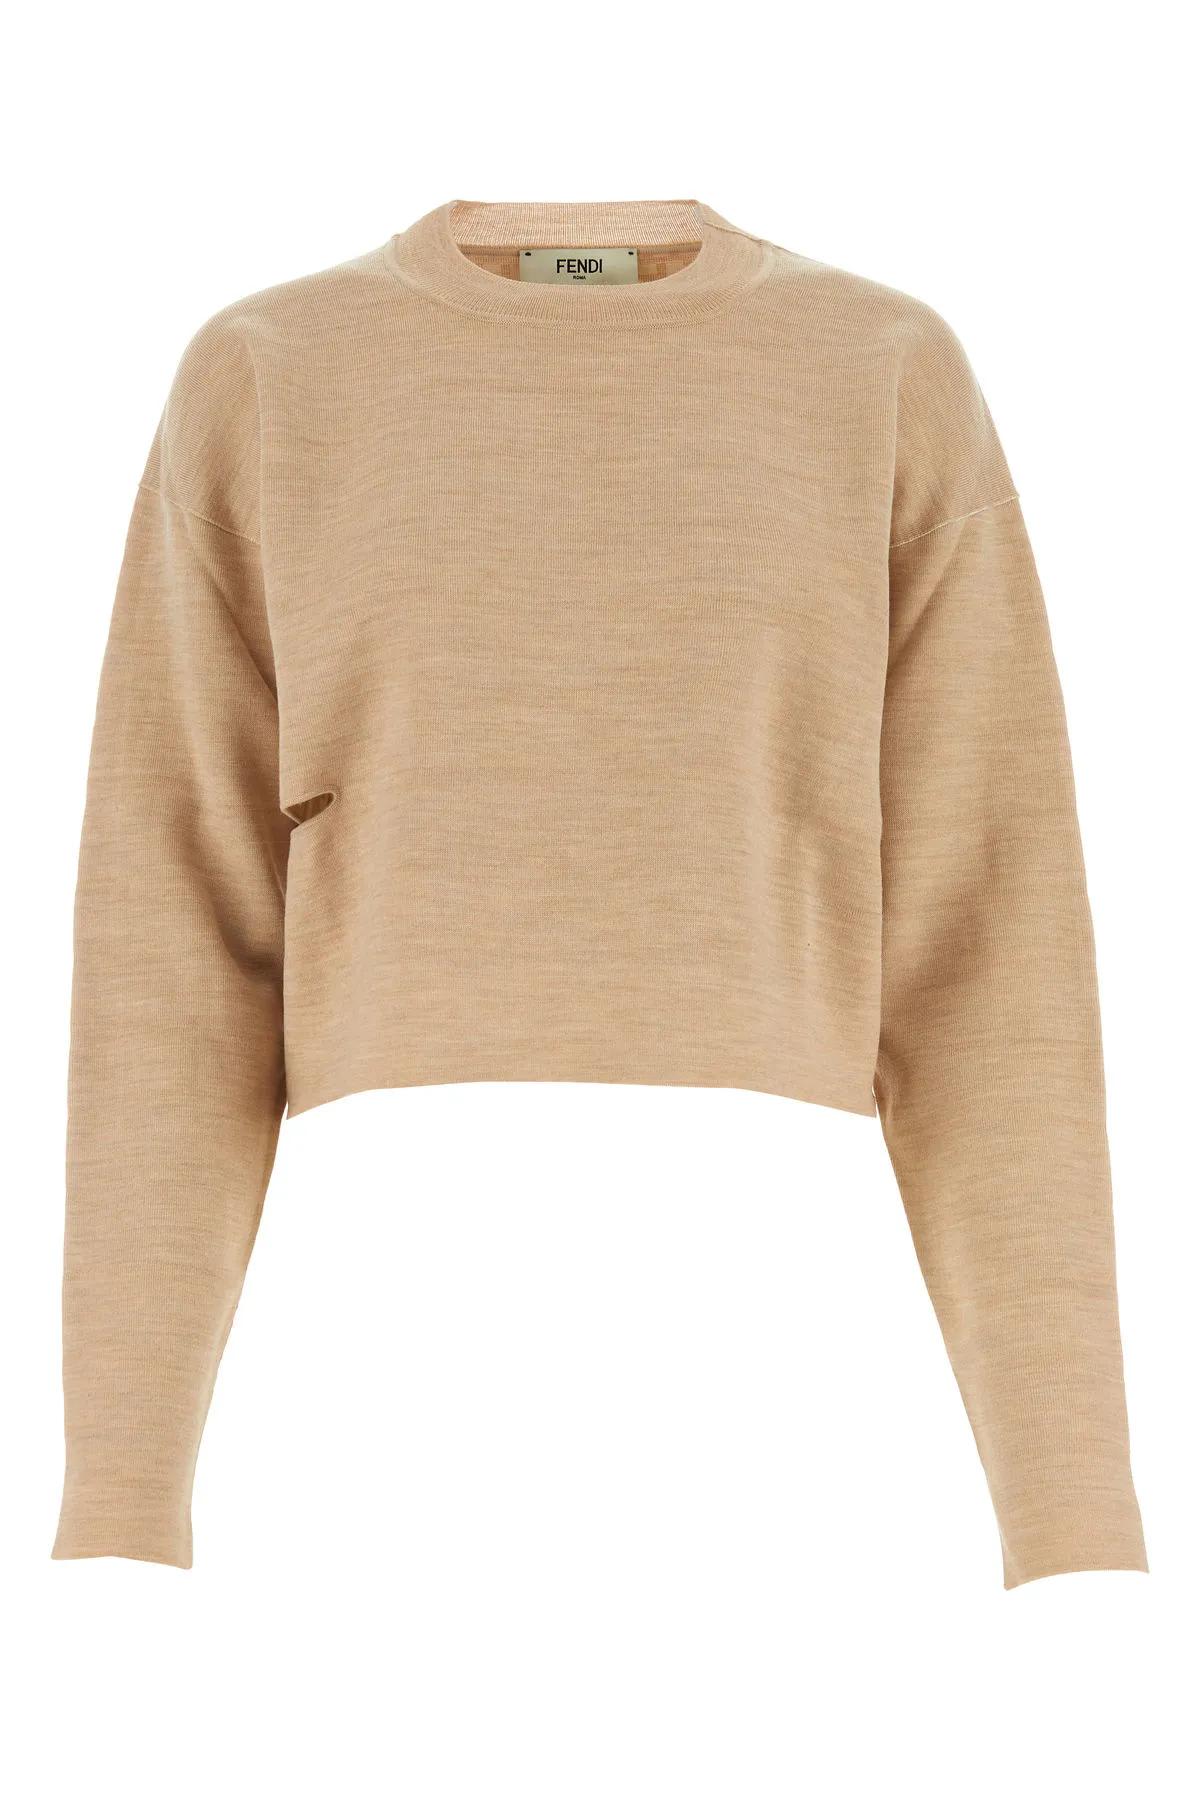 Fendi Beige Wool Blend Reversible Sweater